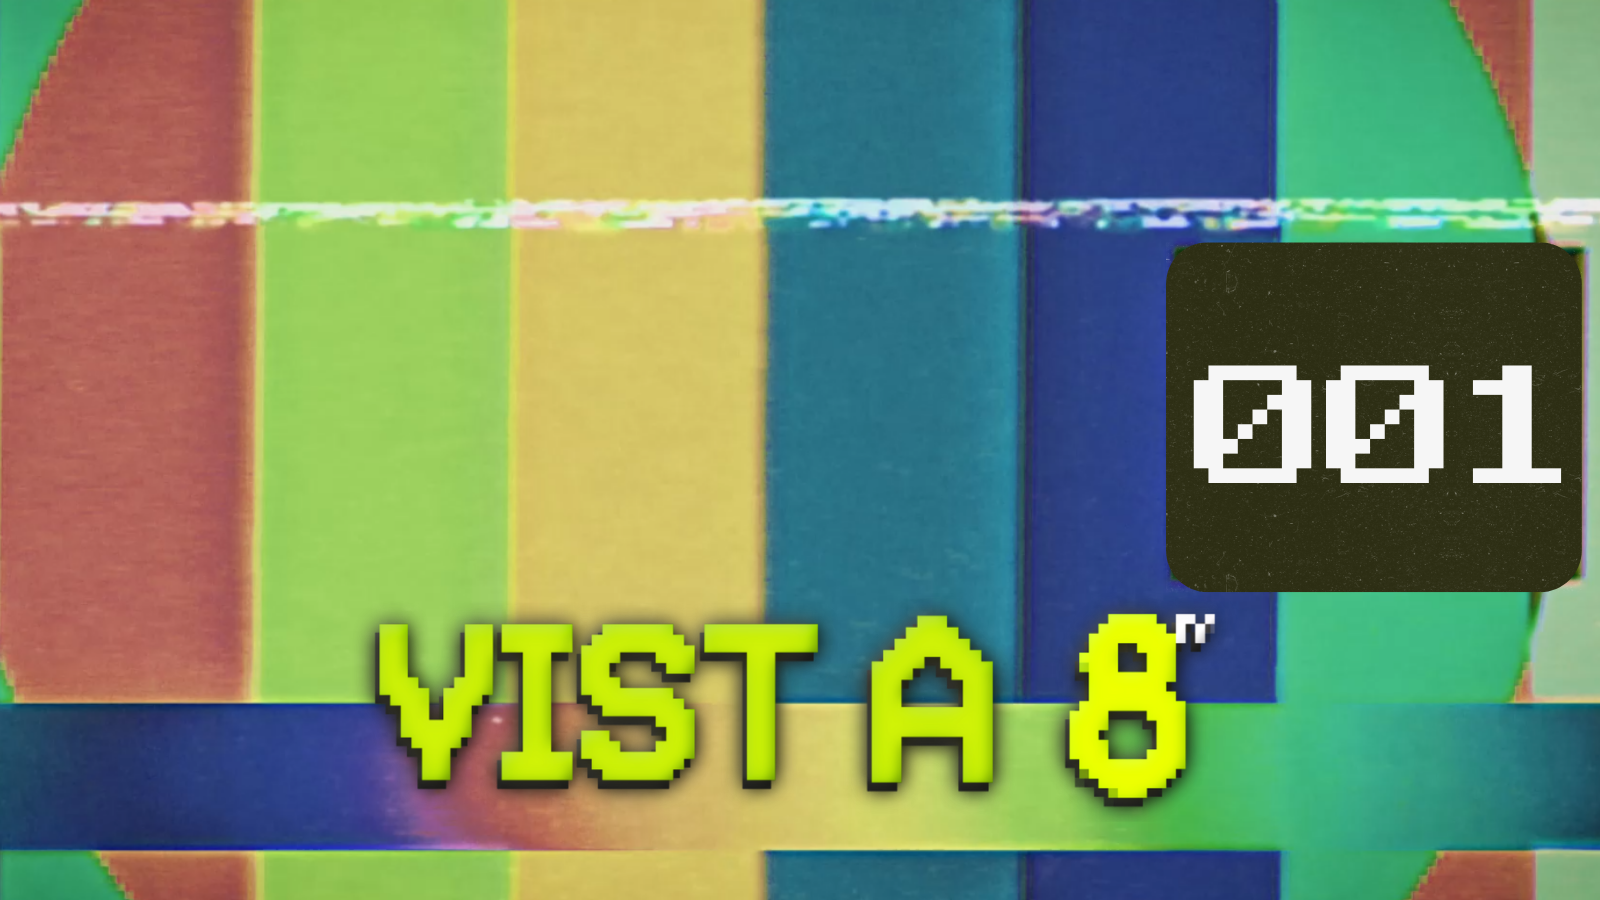 VIST A 8TV - EPISODI 1